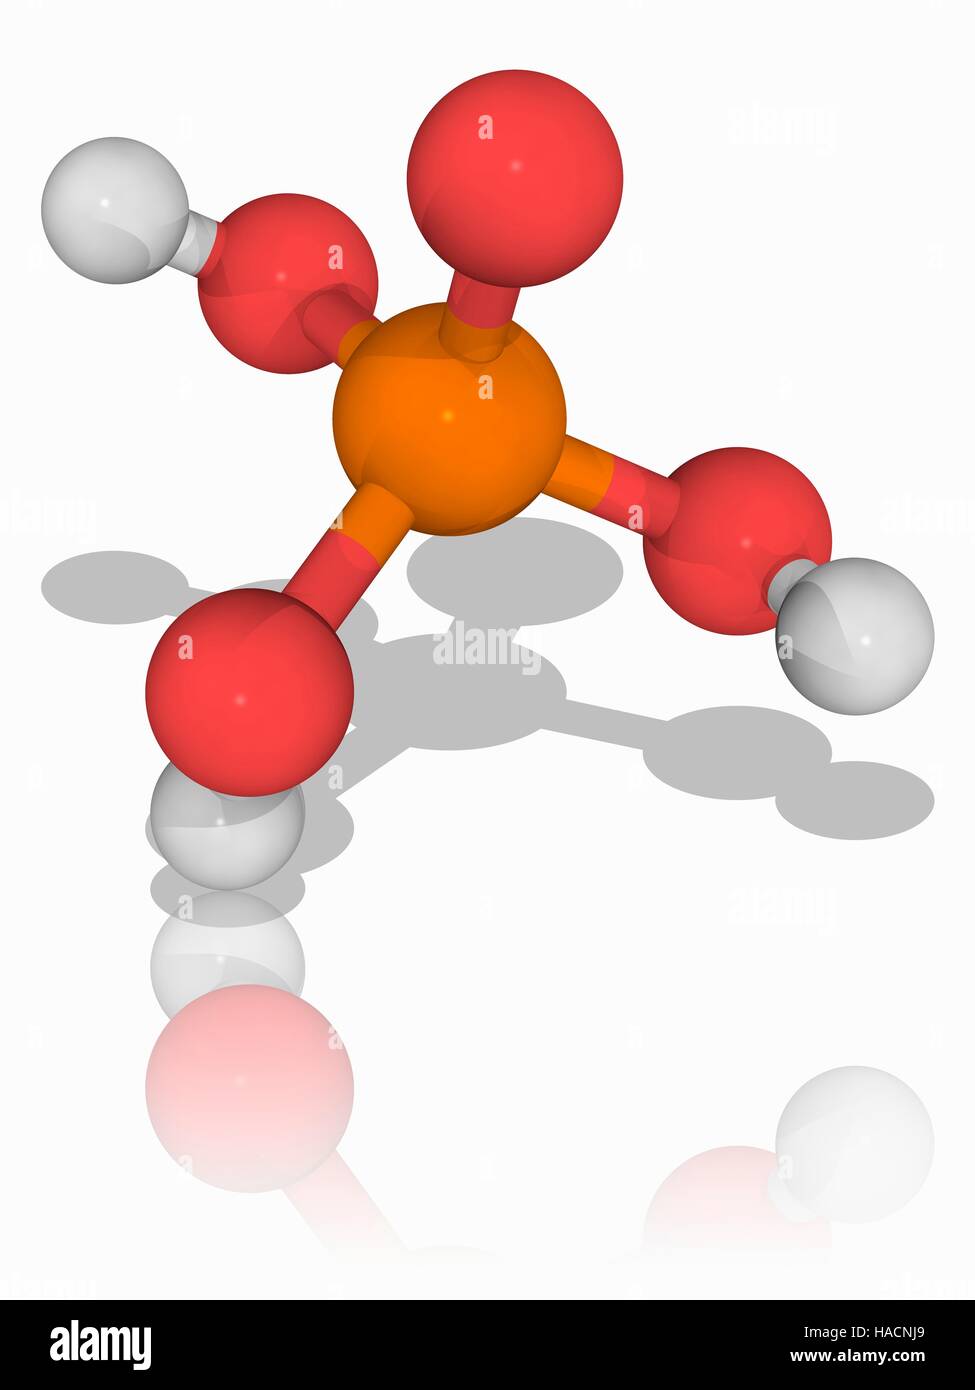 Phosphorsäure. Molekülmodell der anorganischen Verbindung Phosphorsäure  (H3. O4. (P), verwendet eine starke Säure, die mehrere hat unter anderem  als ein Rostumwandler. Atome als Kugeln dargestellt werden und sind  farblich gekennzeichnet: Phosphor (orange),